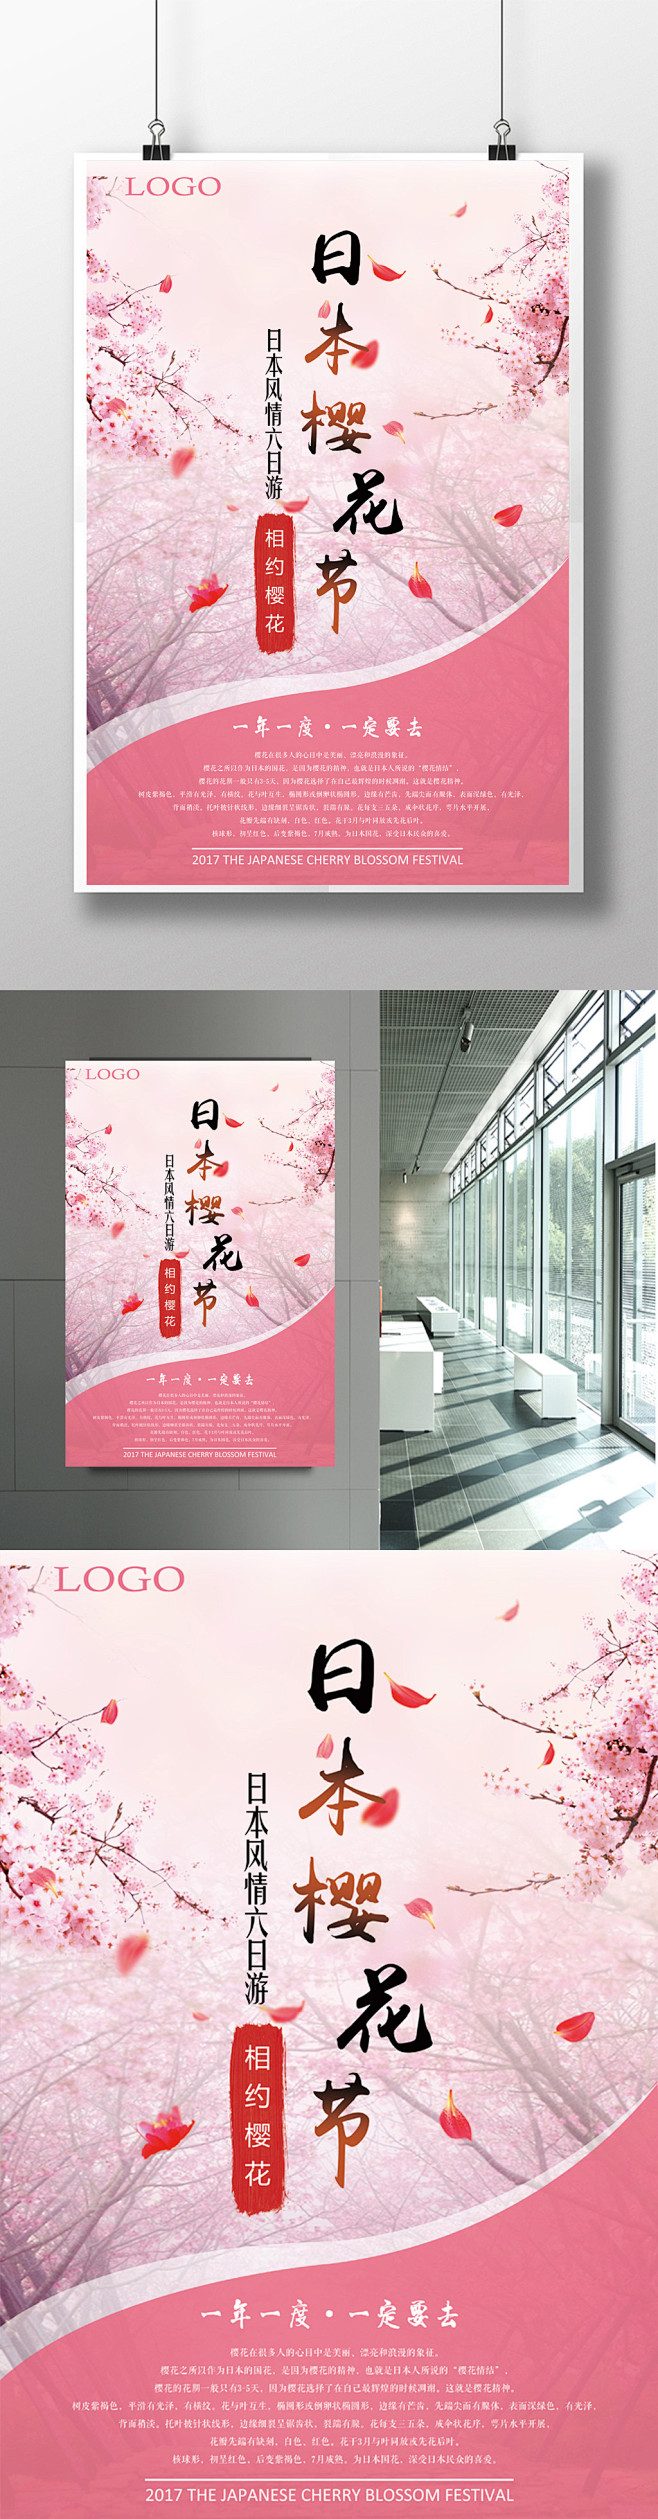 日本樱花节旅游海报设计